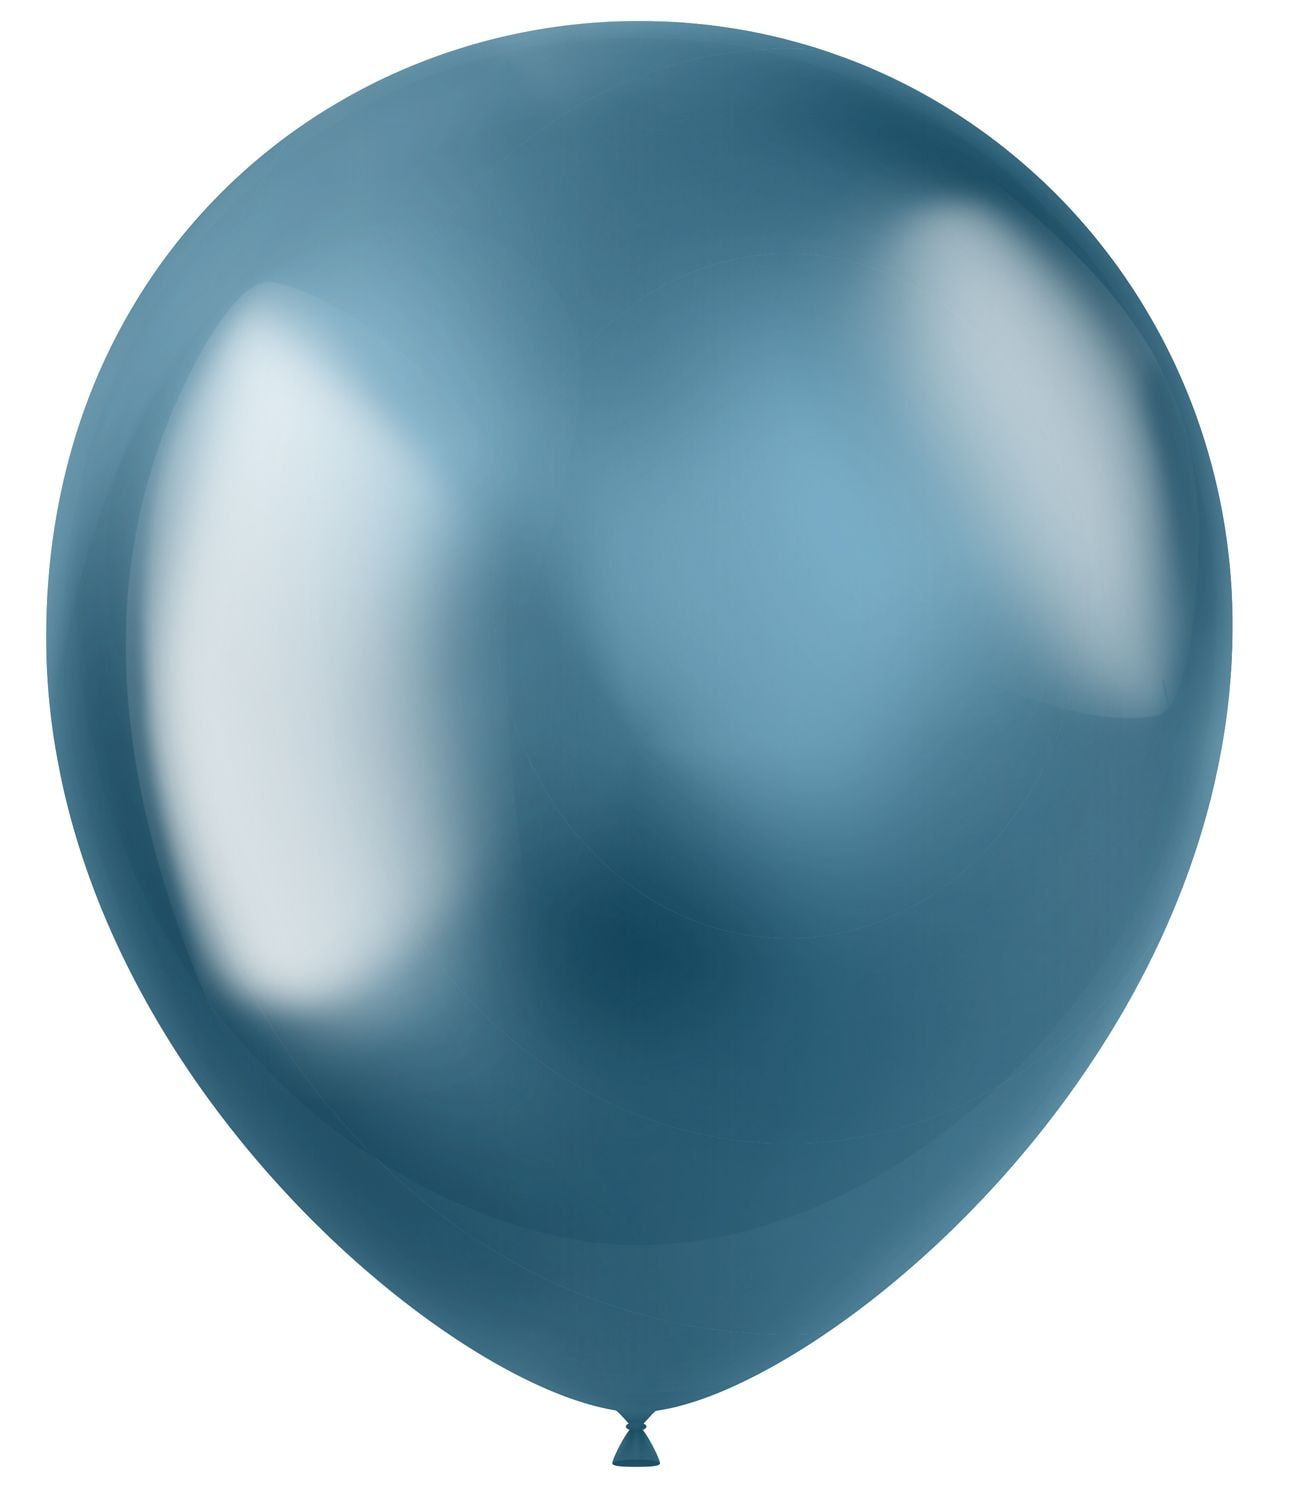 Intens blauwe ballonnen